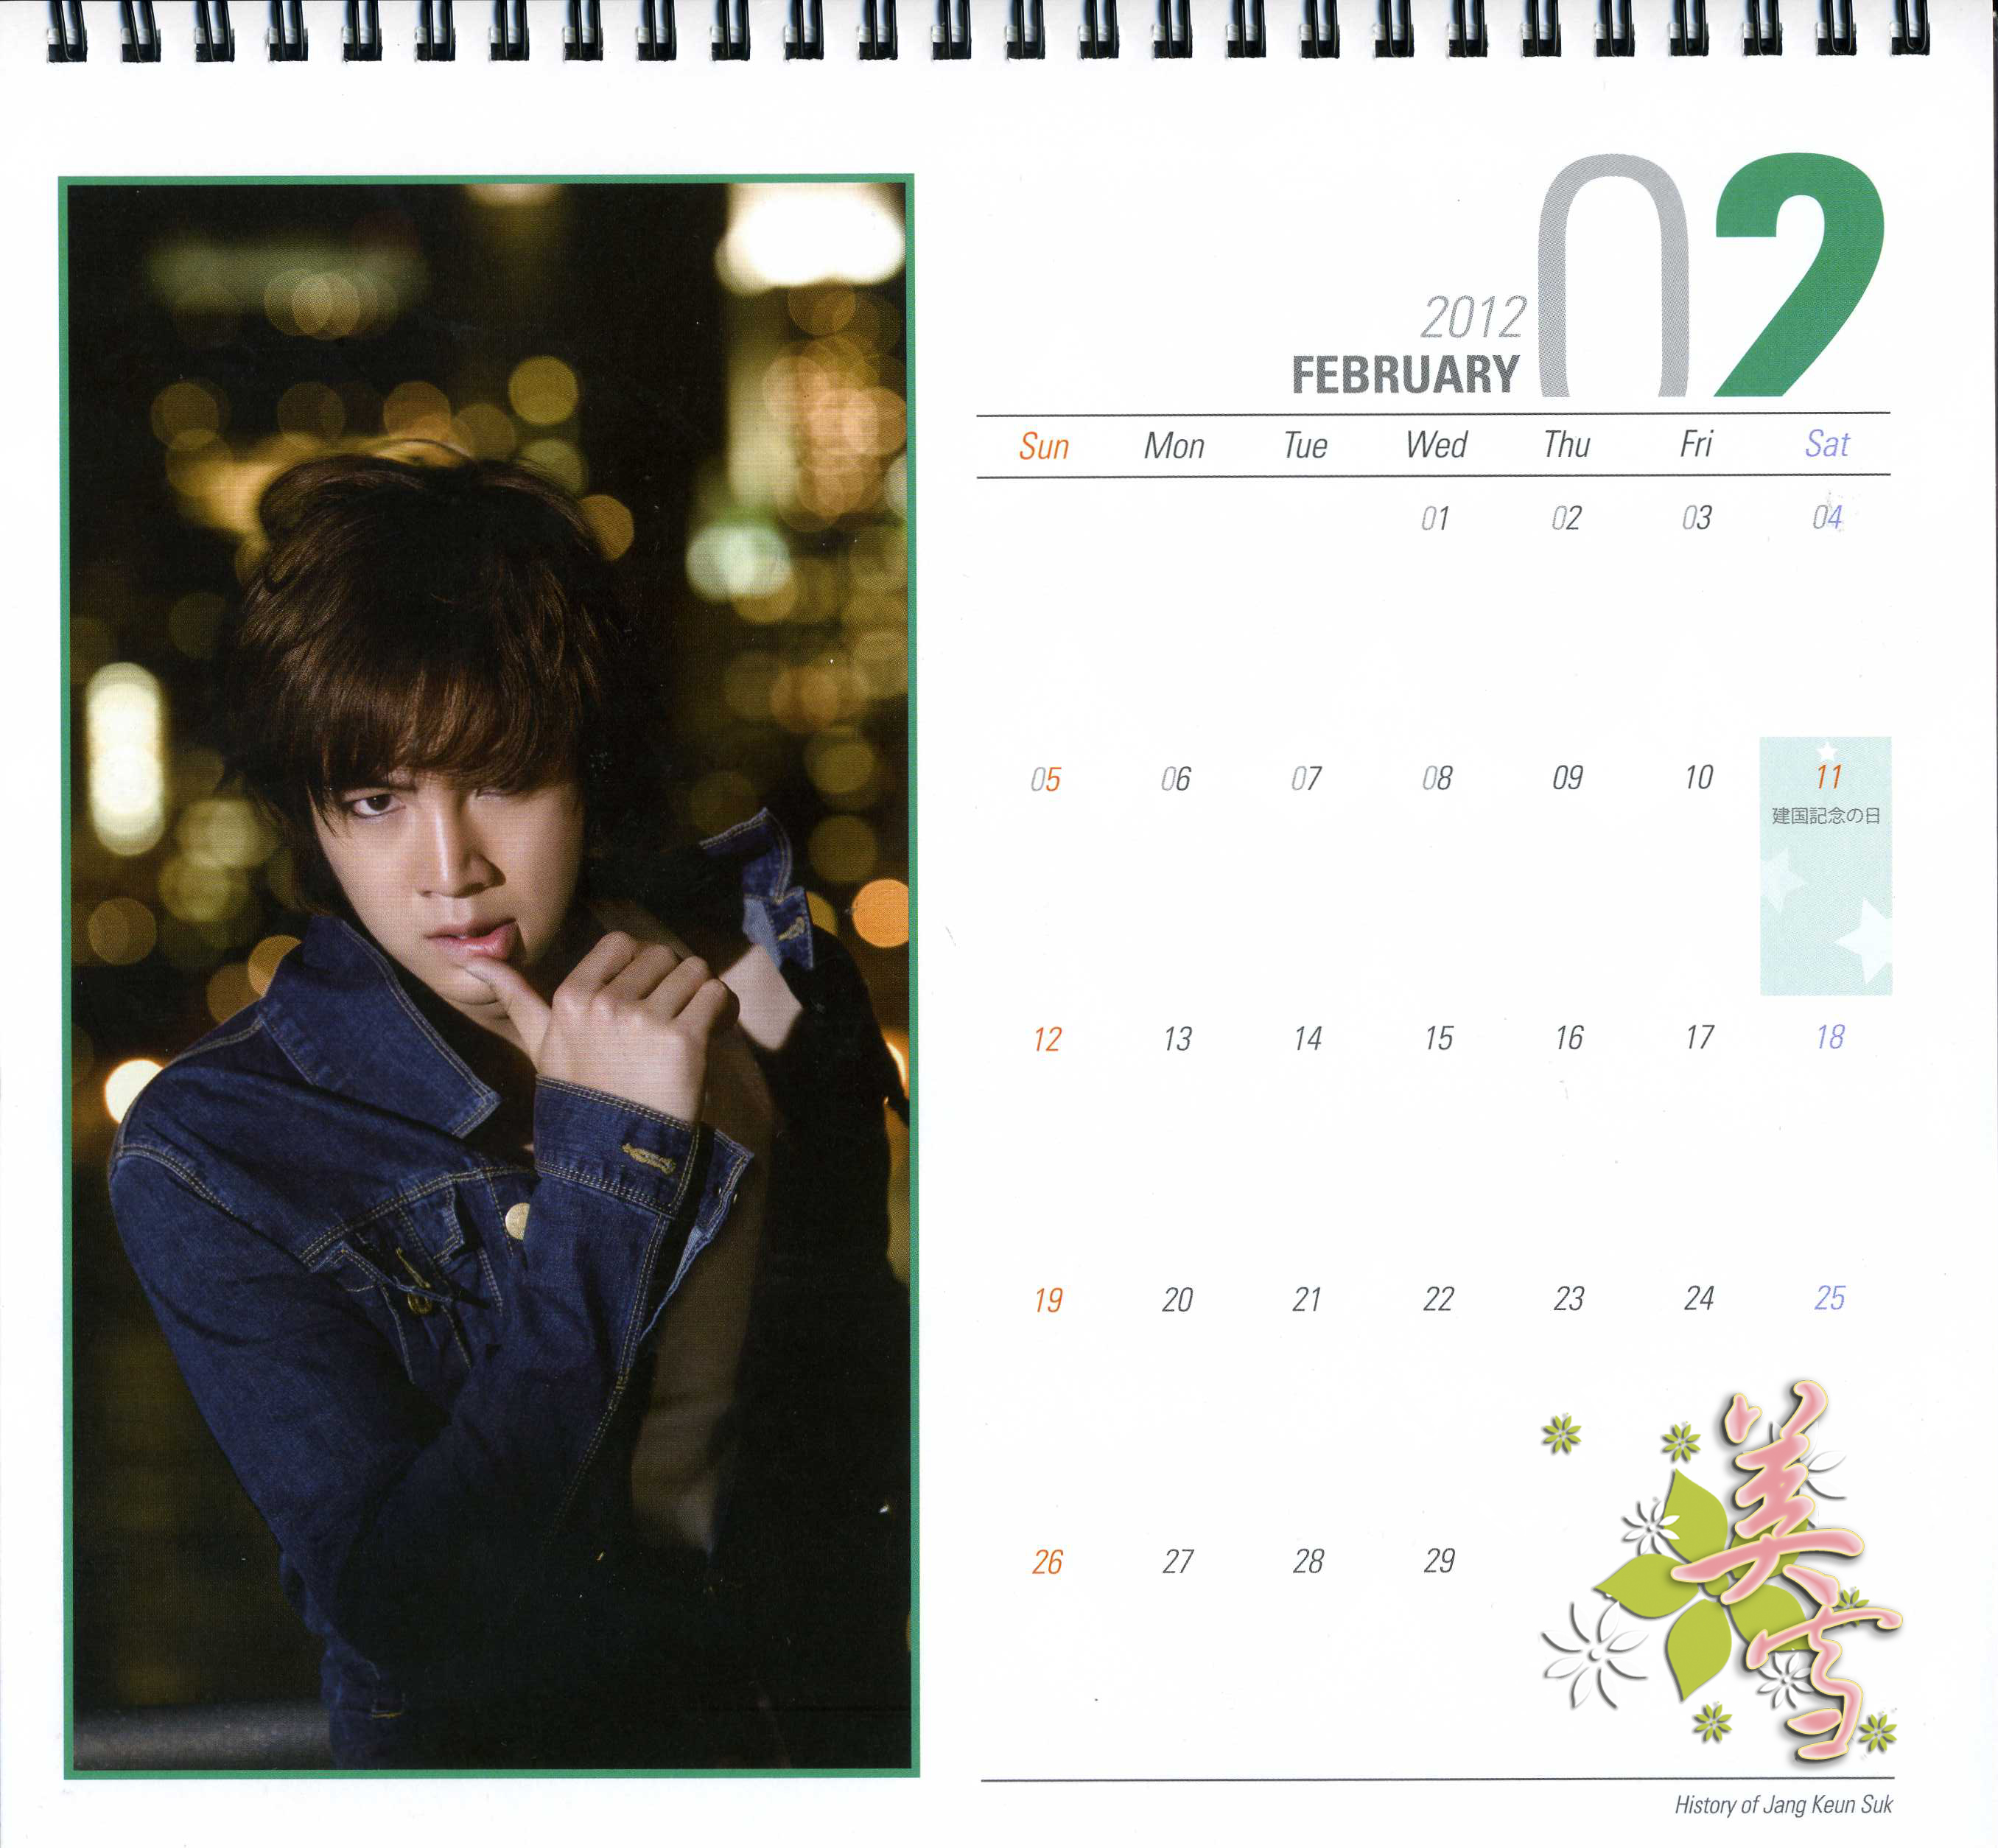 2011 Desktop calendar from “History of Jang Keun Suk